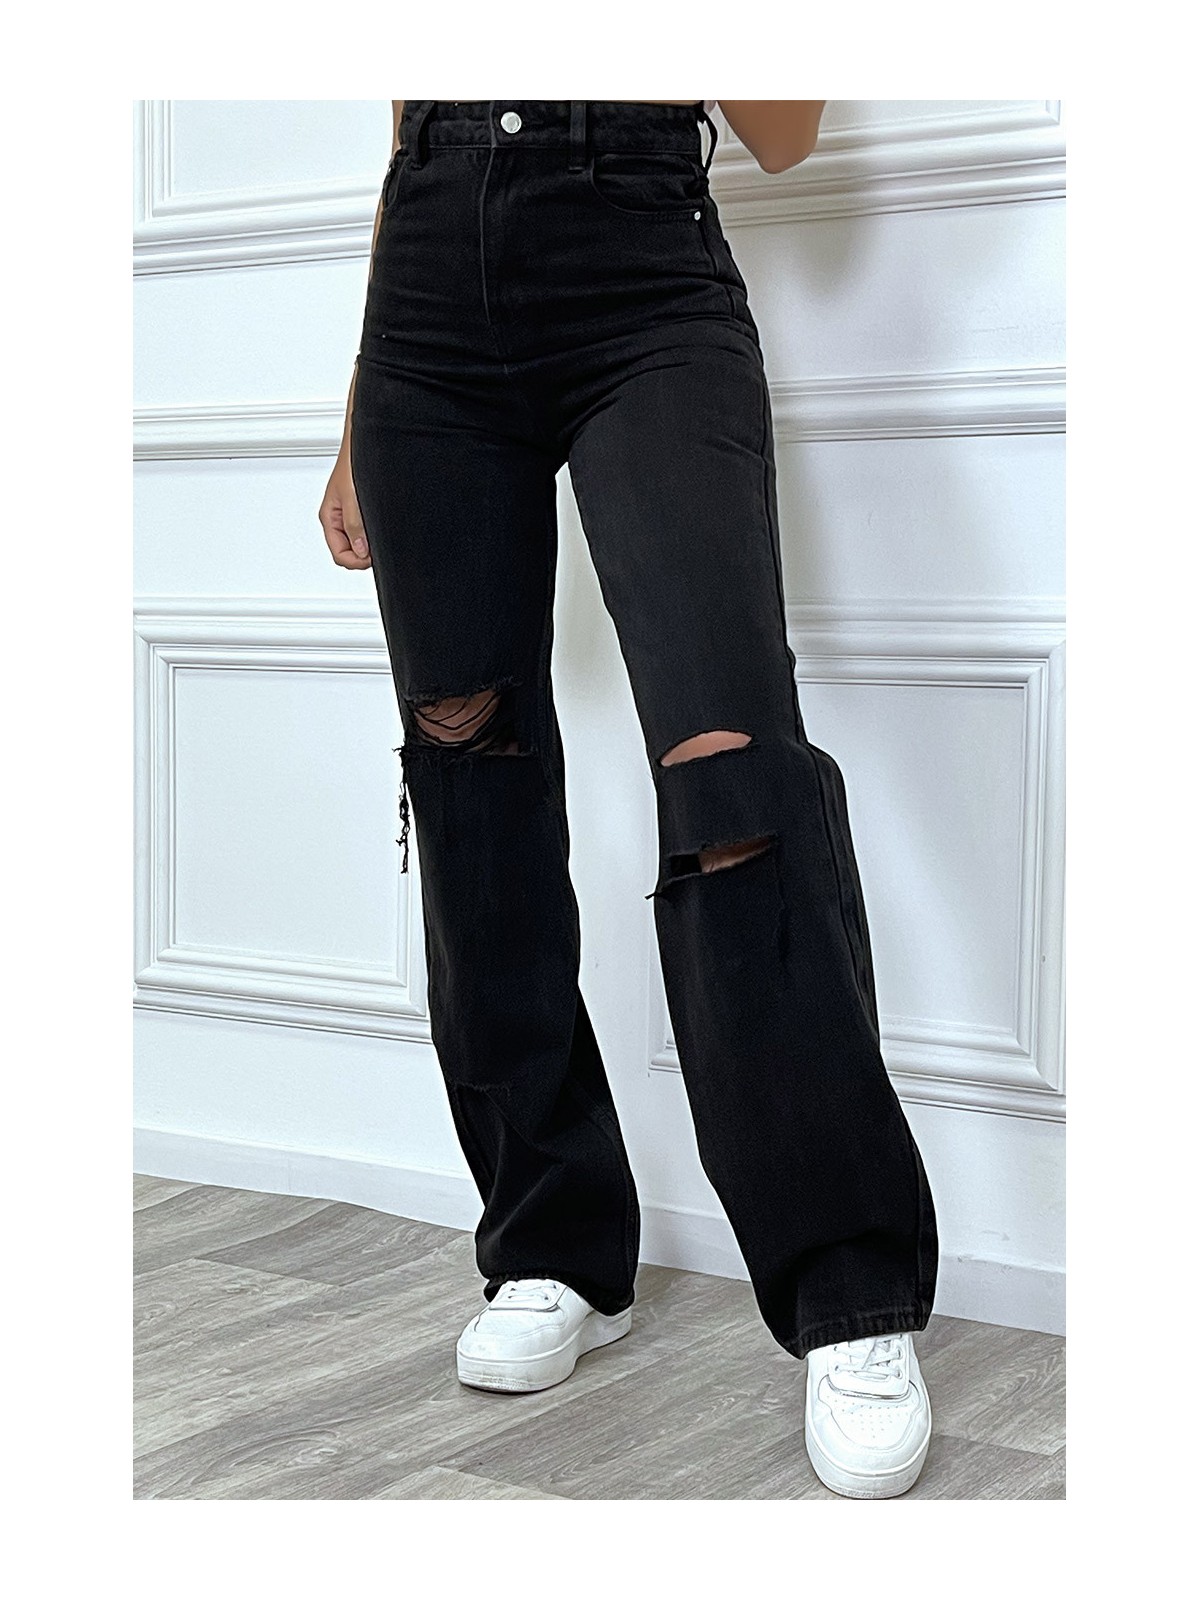 Jeans boot-cut noir taille haute déchiré aux genoux. Jeans hyper tendance 2021 instagram et TikTok - 6